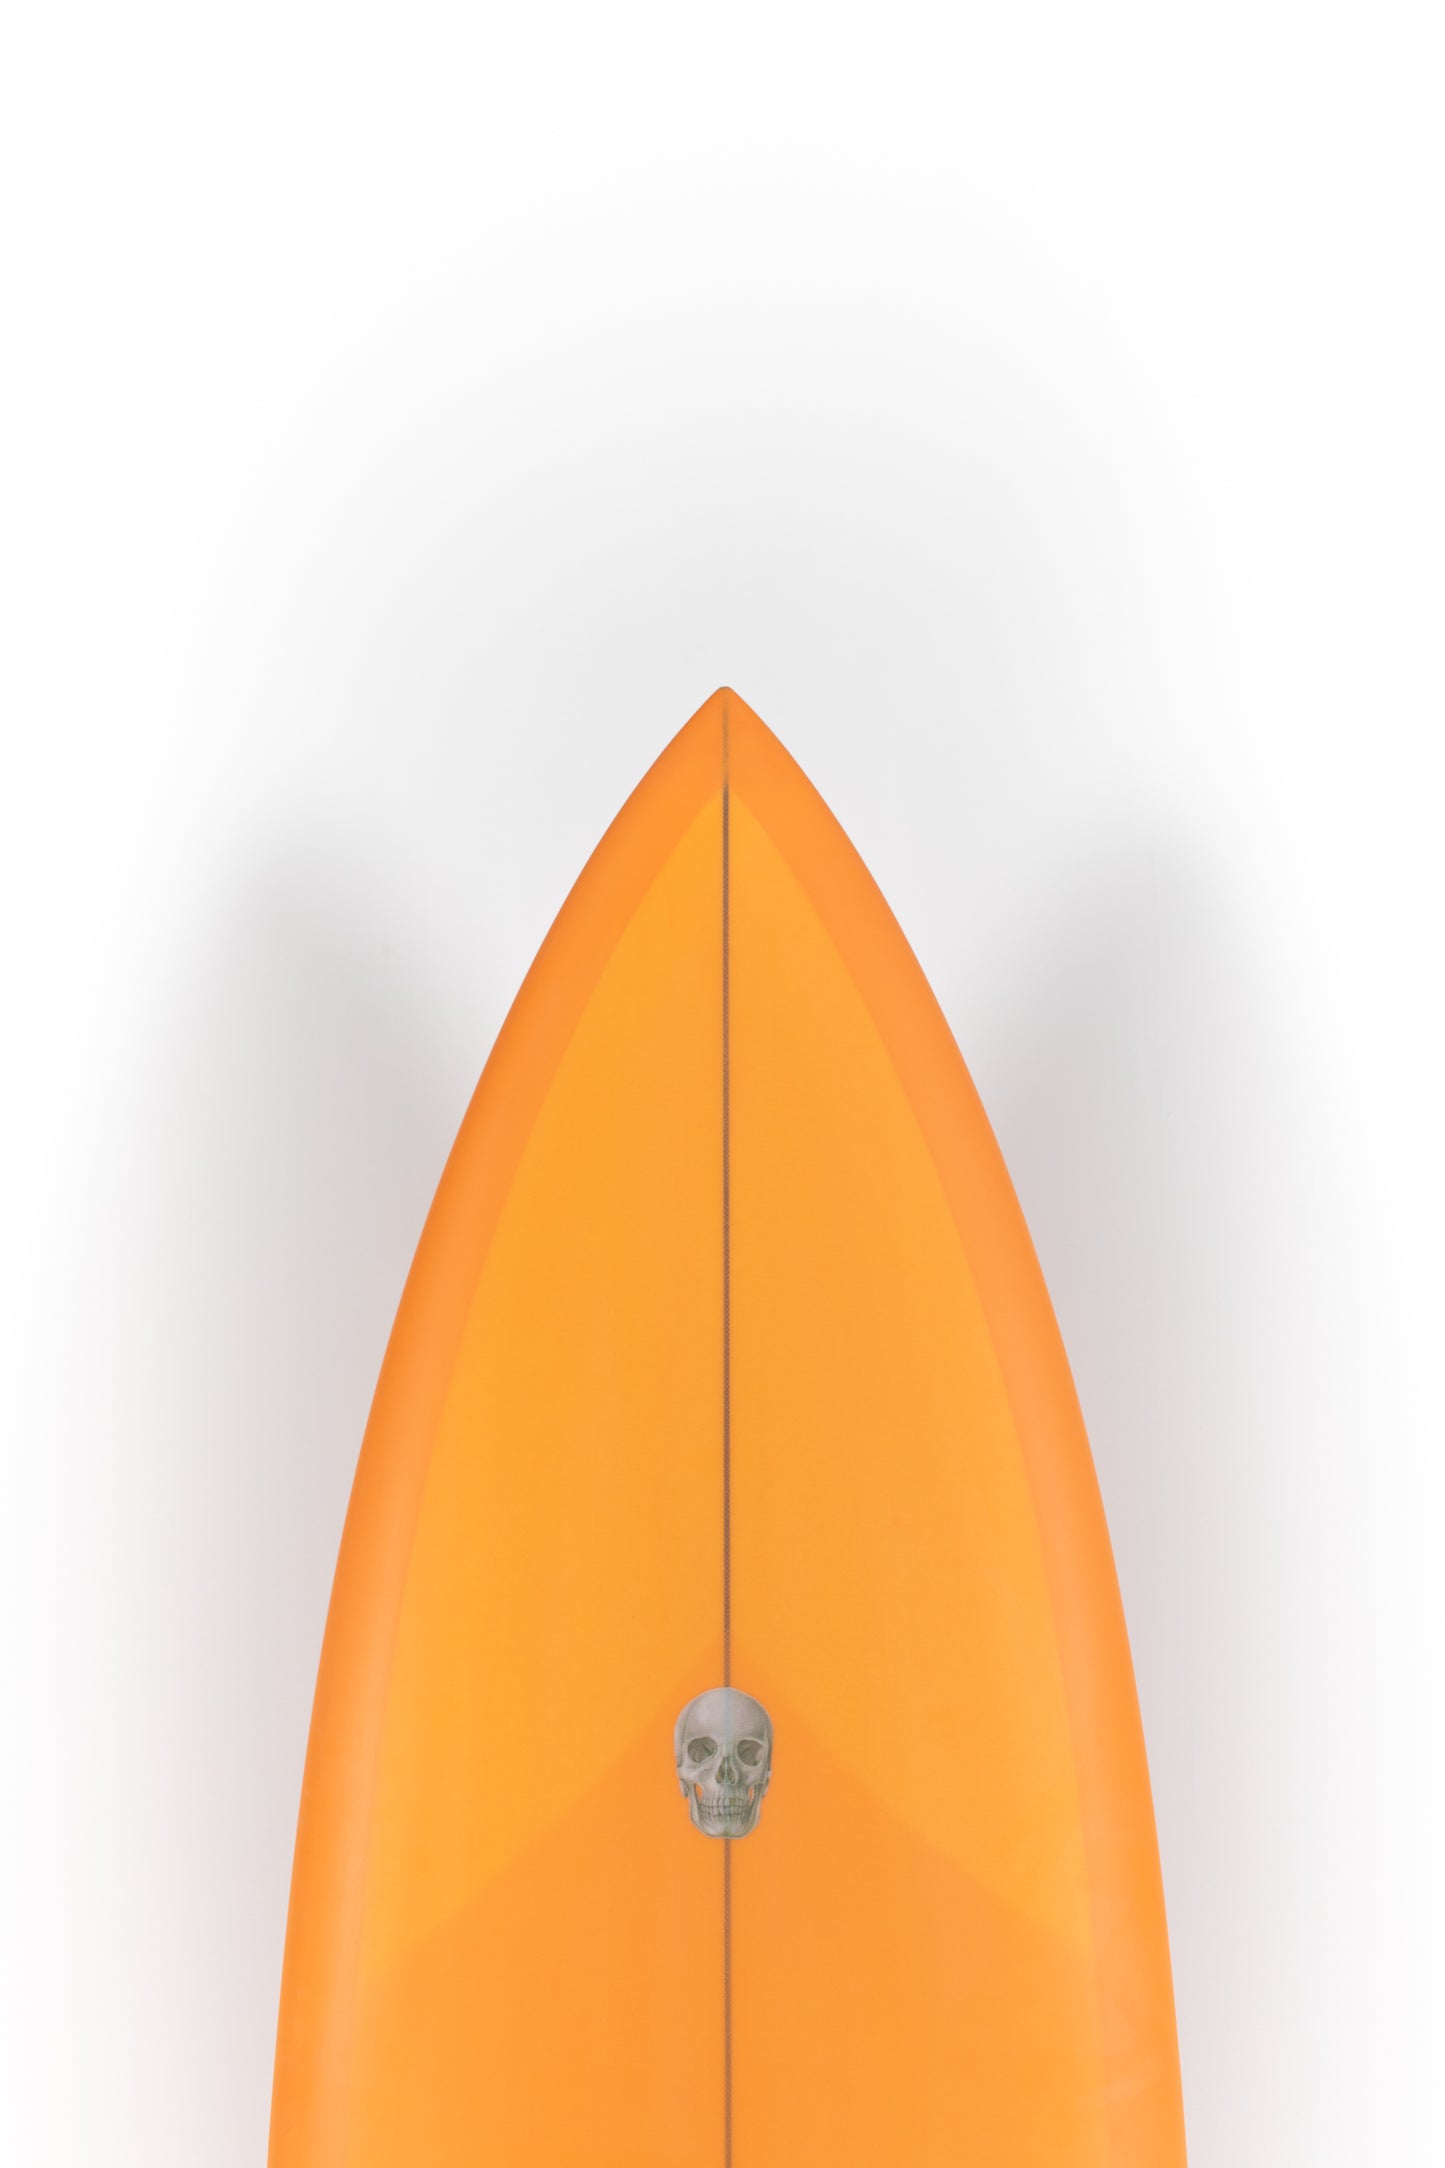 
                  
                    Pukas Sur Shop - Christenson Surfboards - LANE SPLITTER MID- 6'8" x 20 7/8 x 2 1/2 - CX04025
                  
                